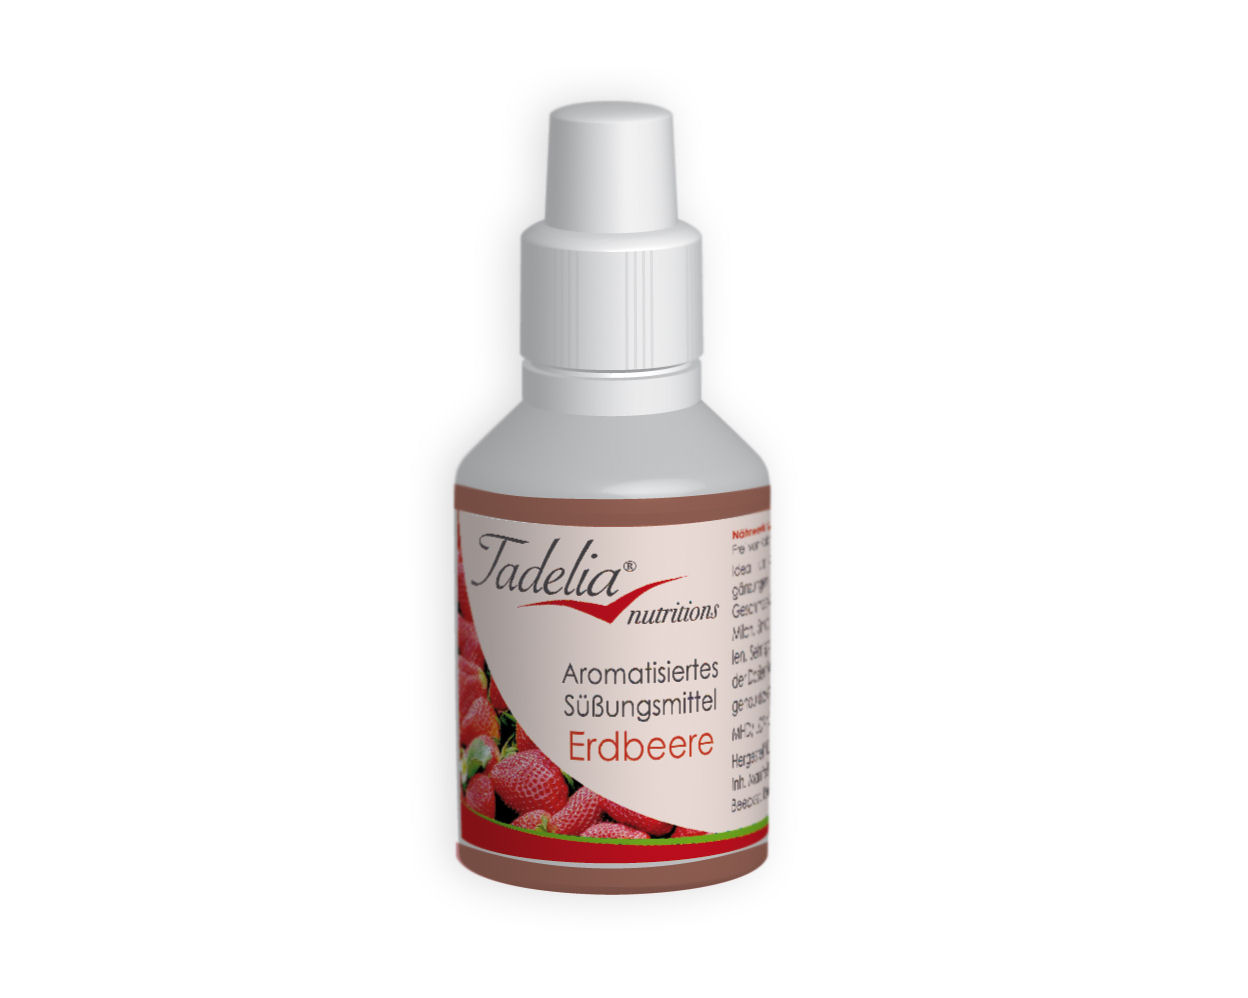 Tadelia® Aromatisiertes Süßungsmittel in 4 Geschmacksrichtungen 4x 30 ml